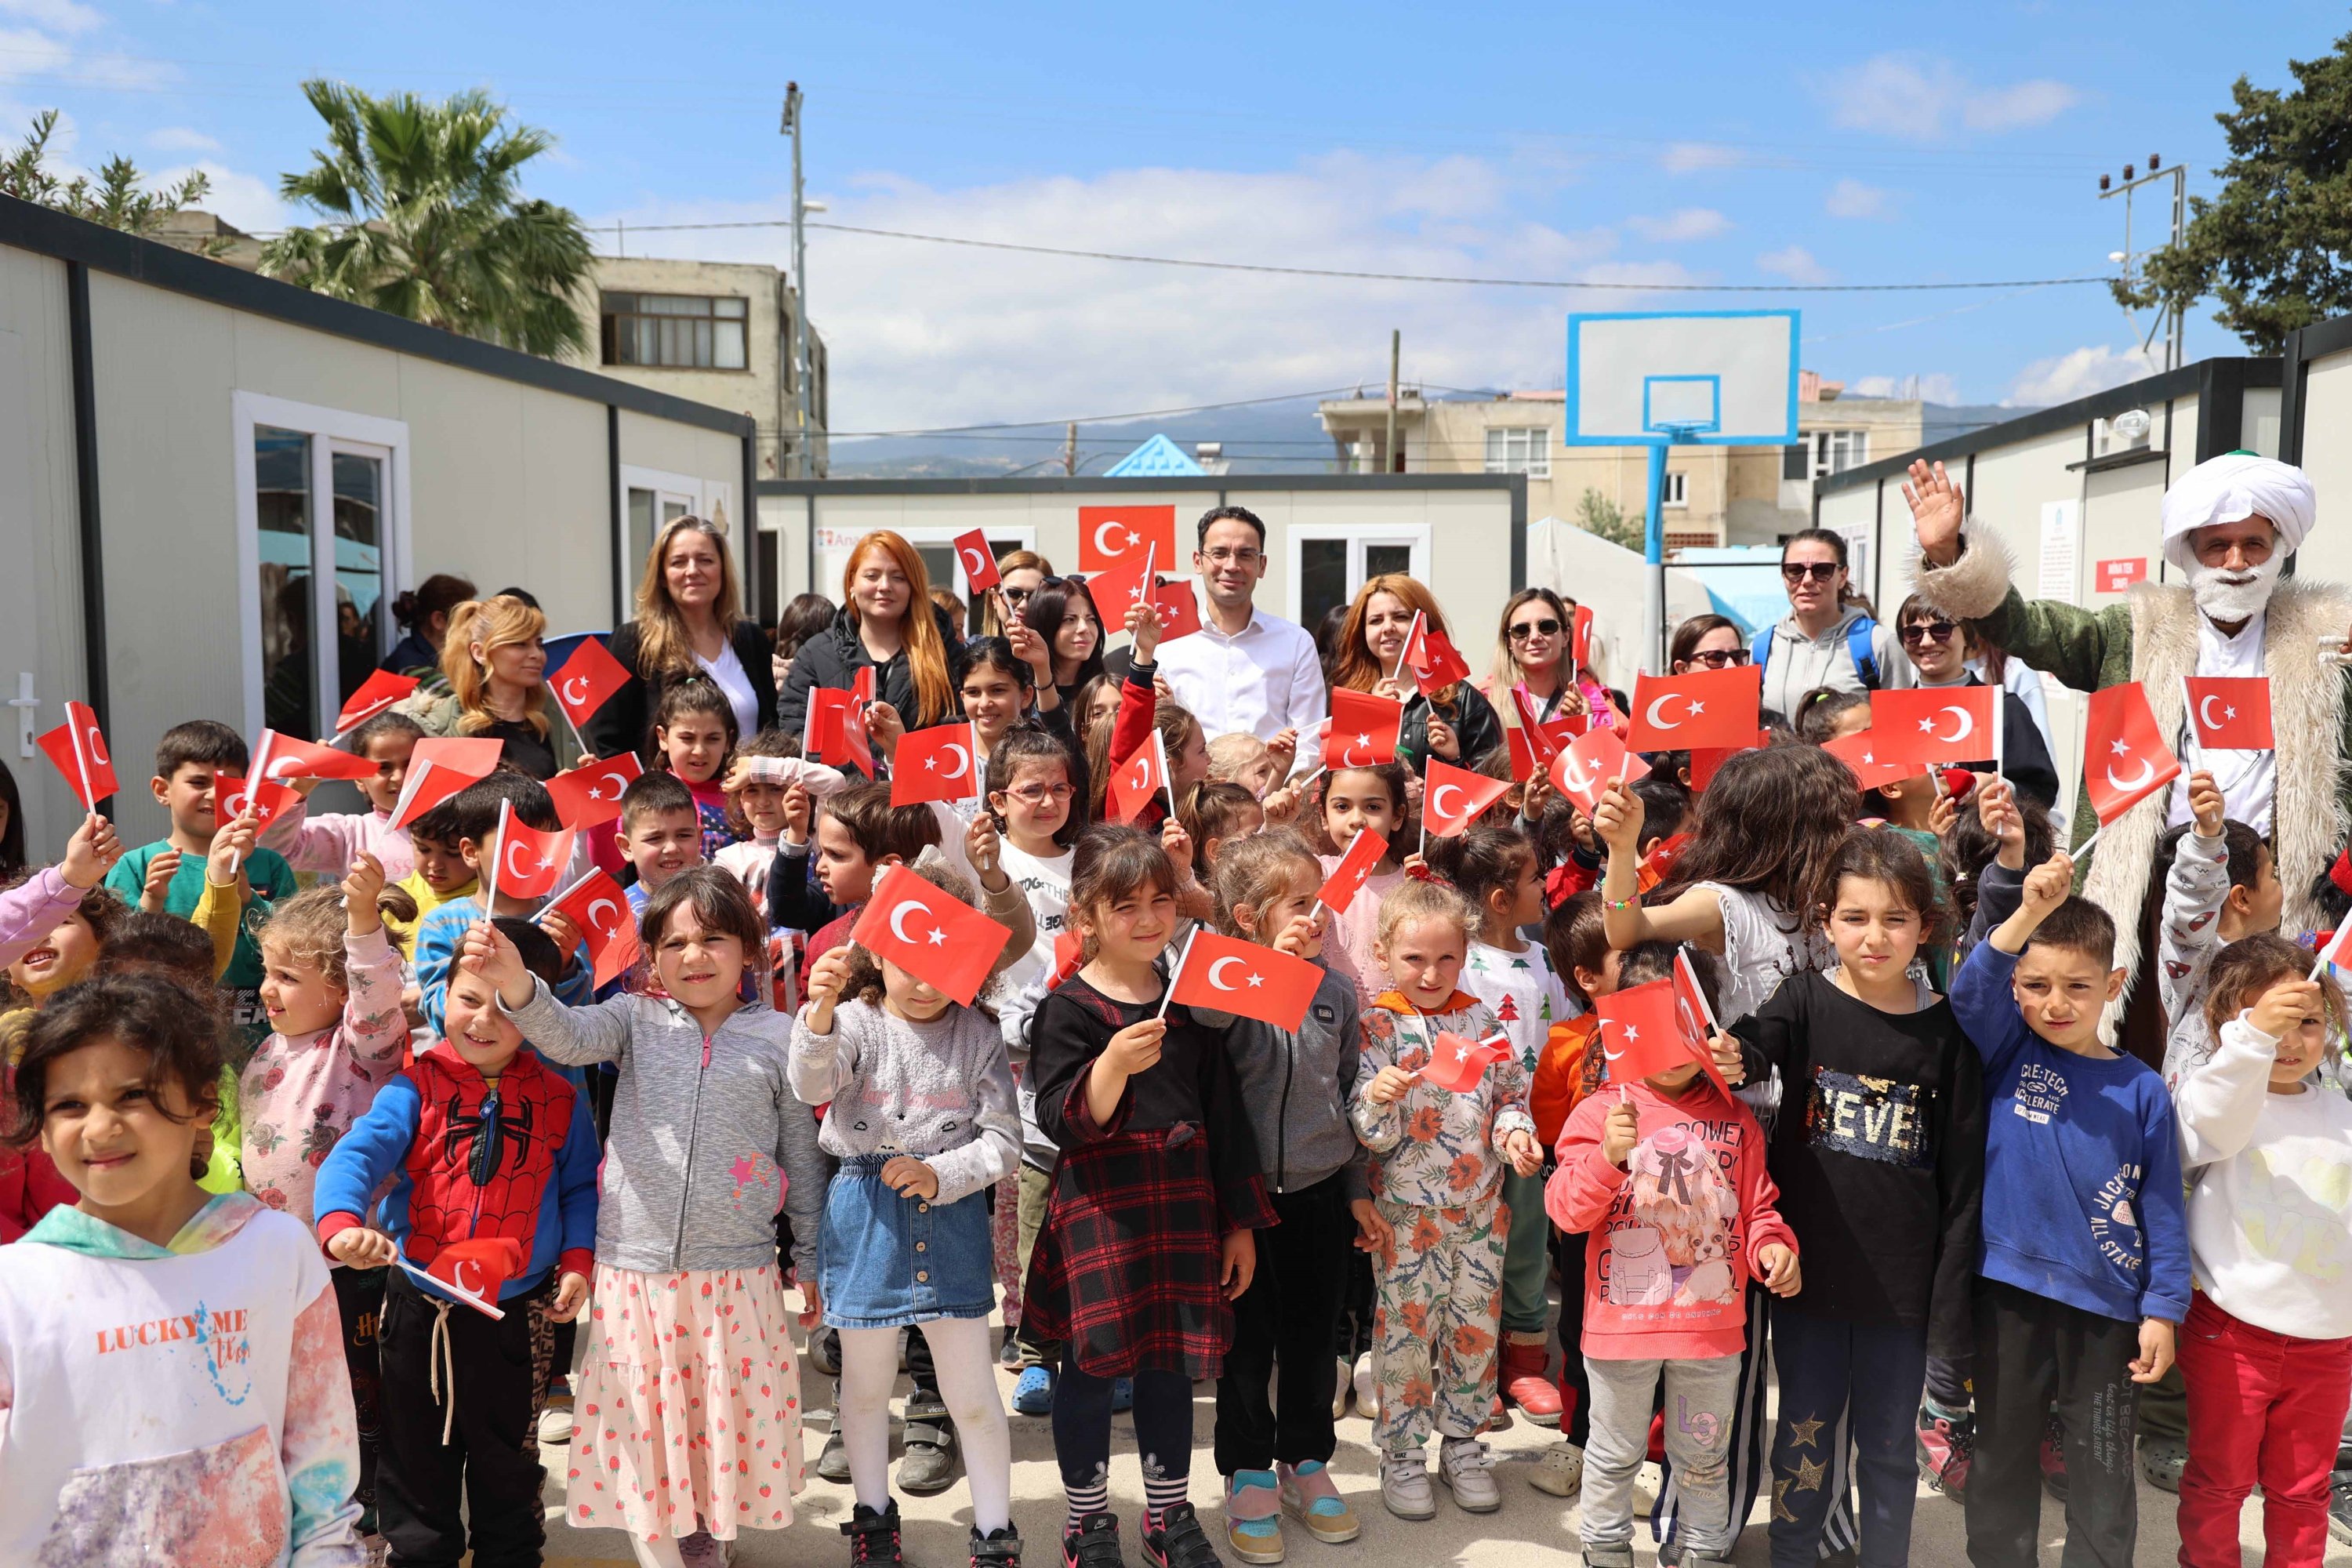 Anak-anak di provinsi yang dilanda gempa Hatay mengibarkan bendera Turki selama kegiatan yang diadakan untuk memperingati Hari Anak, Hatay, Türkiye selatan, 19 April 2023. (Foto IHA)